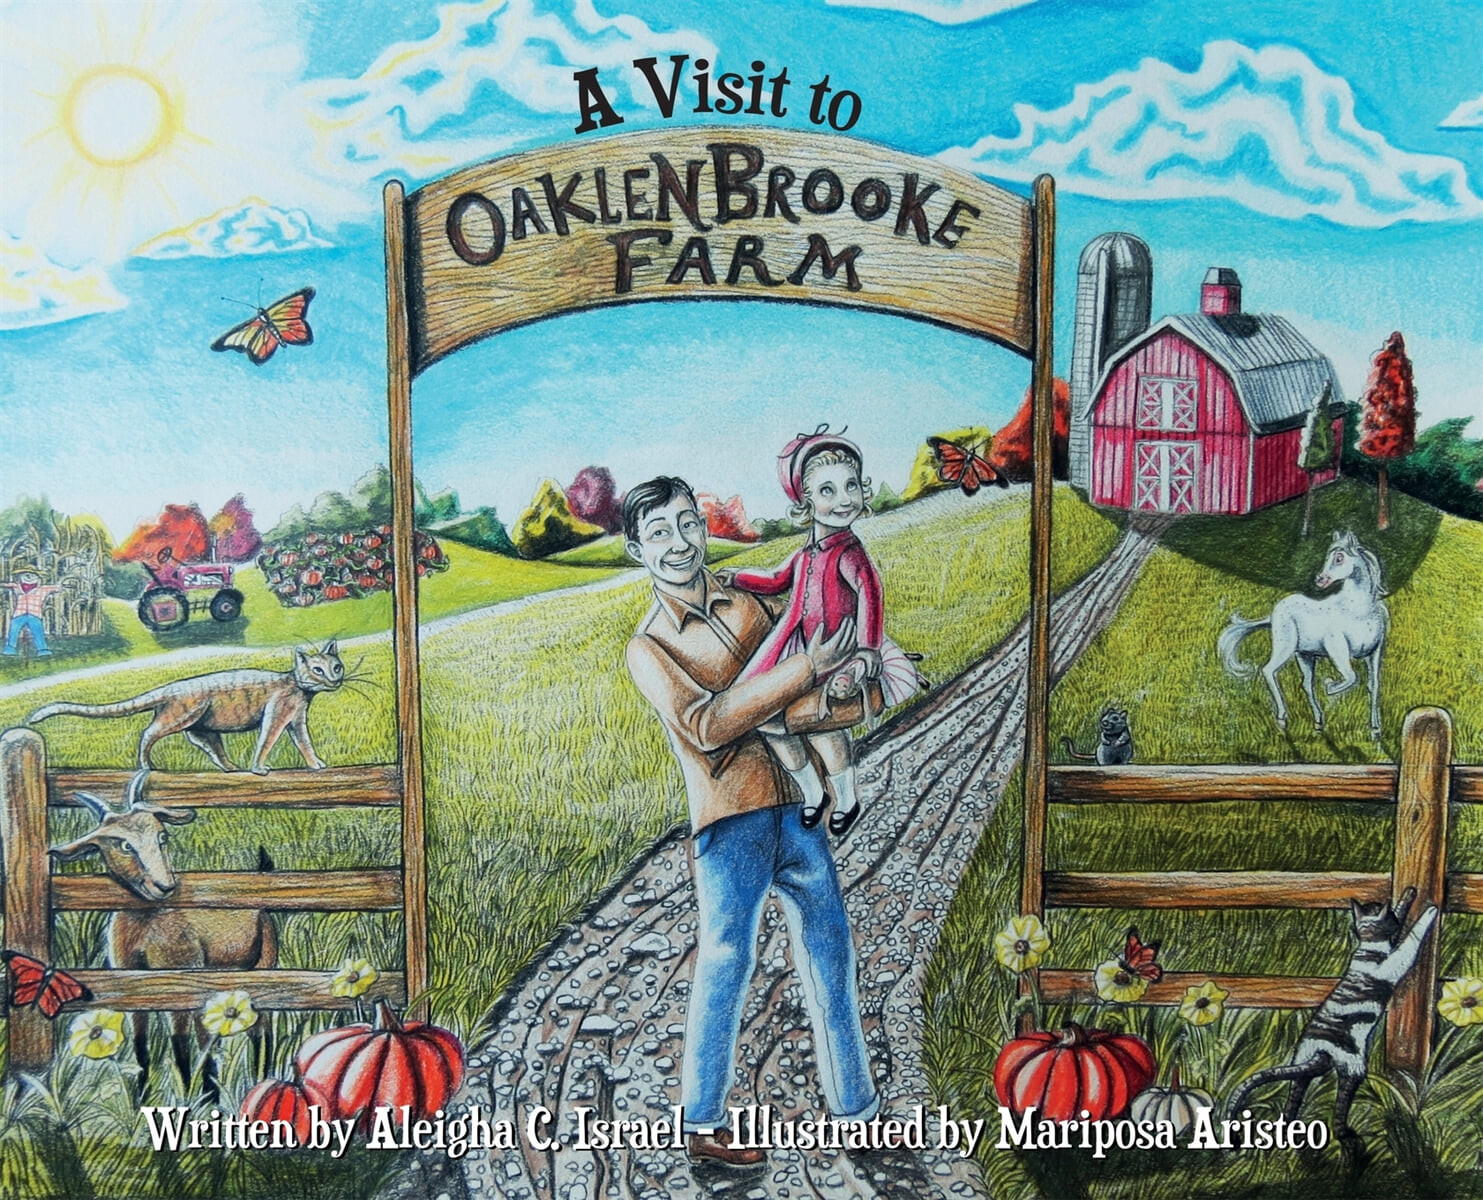 (A) Visit to Oaklenbrooke farm 